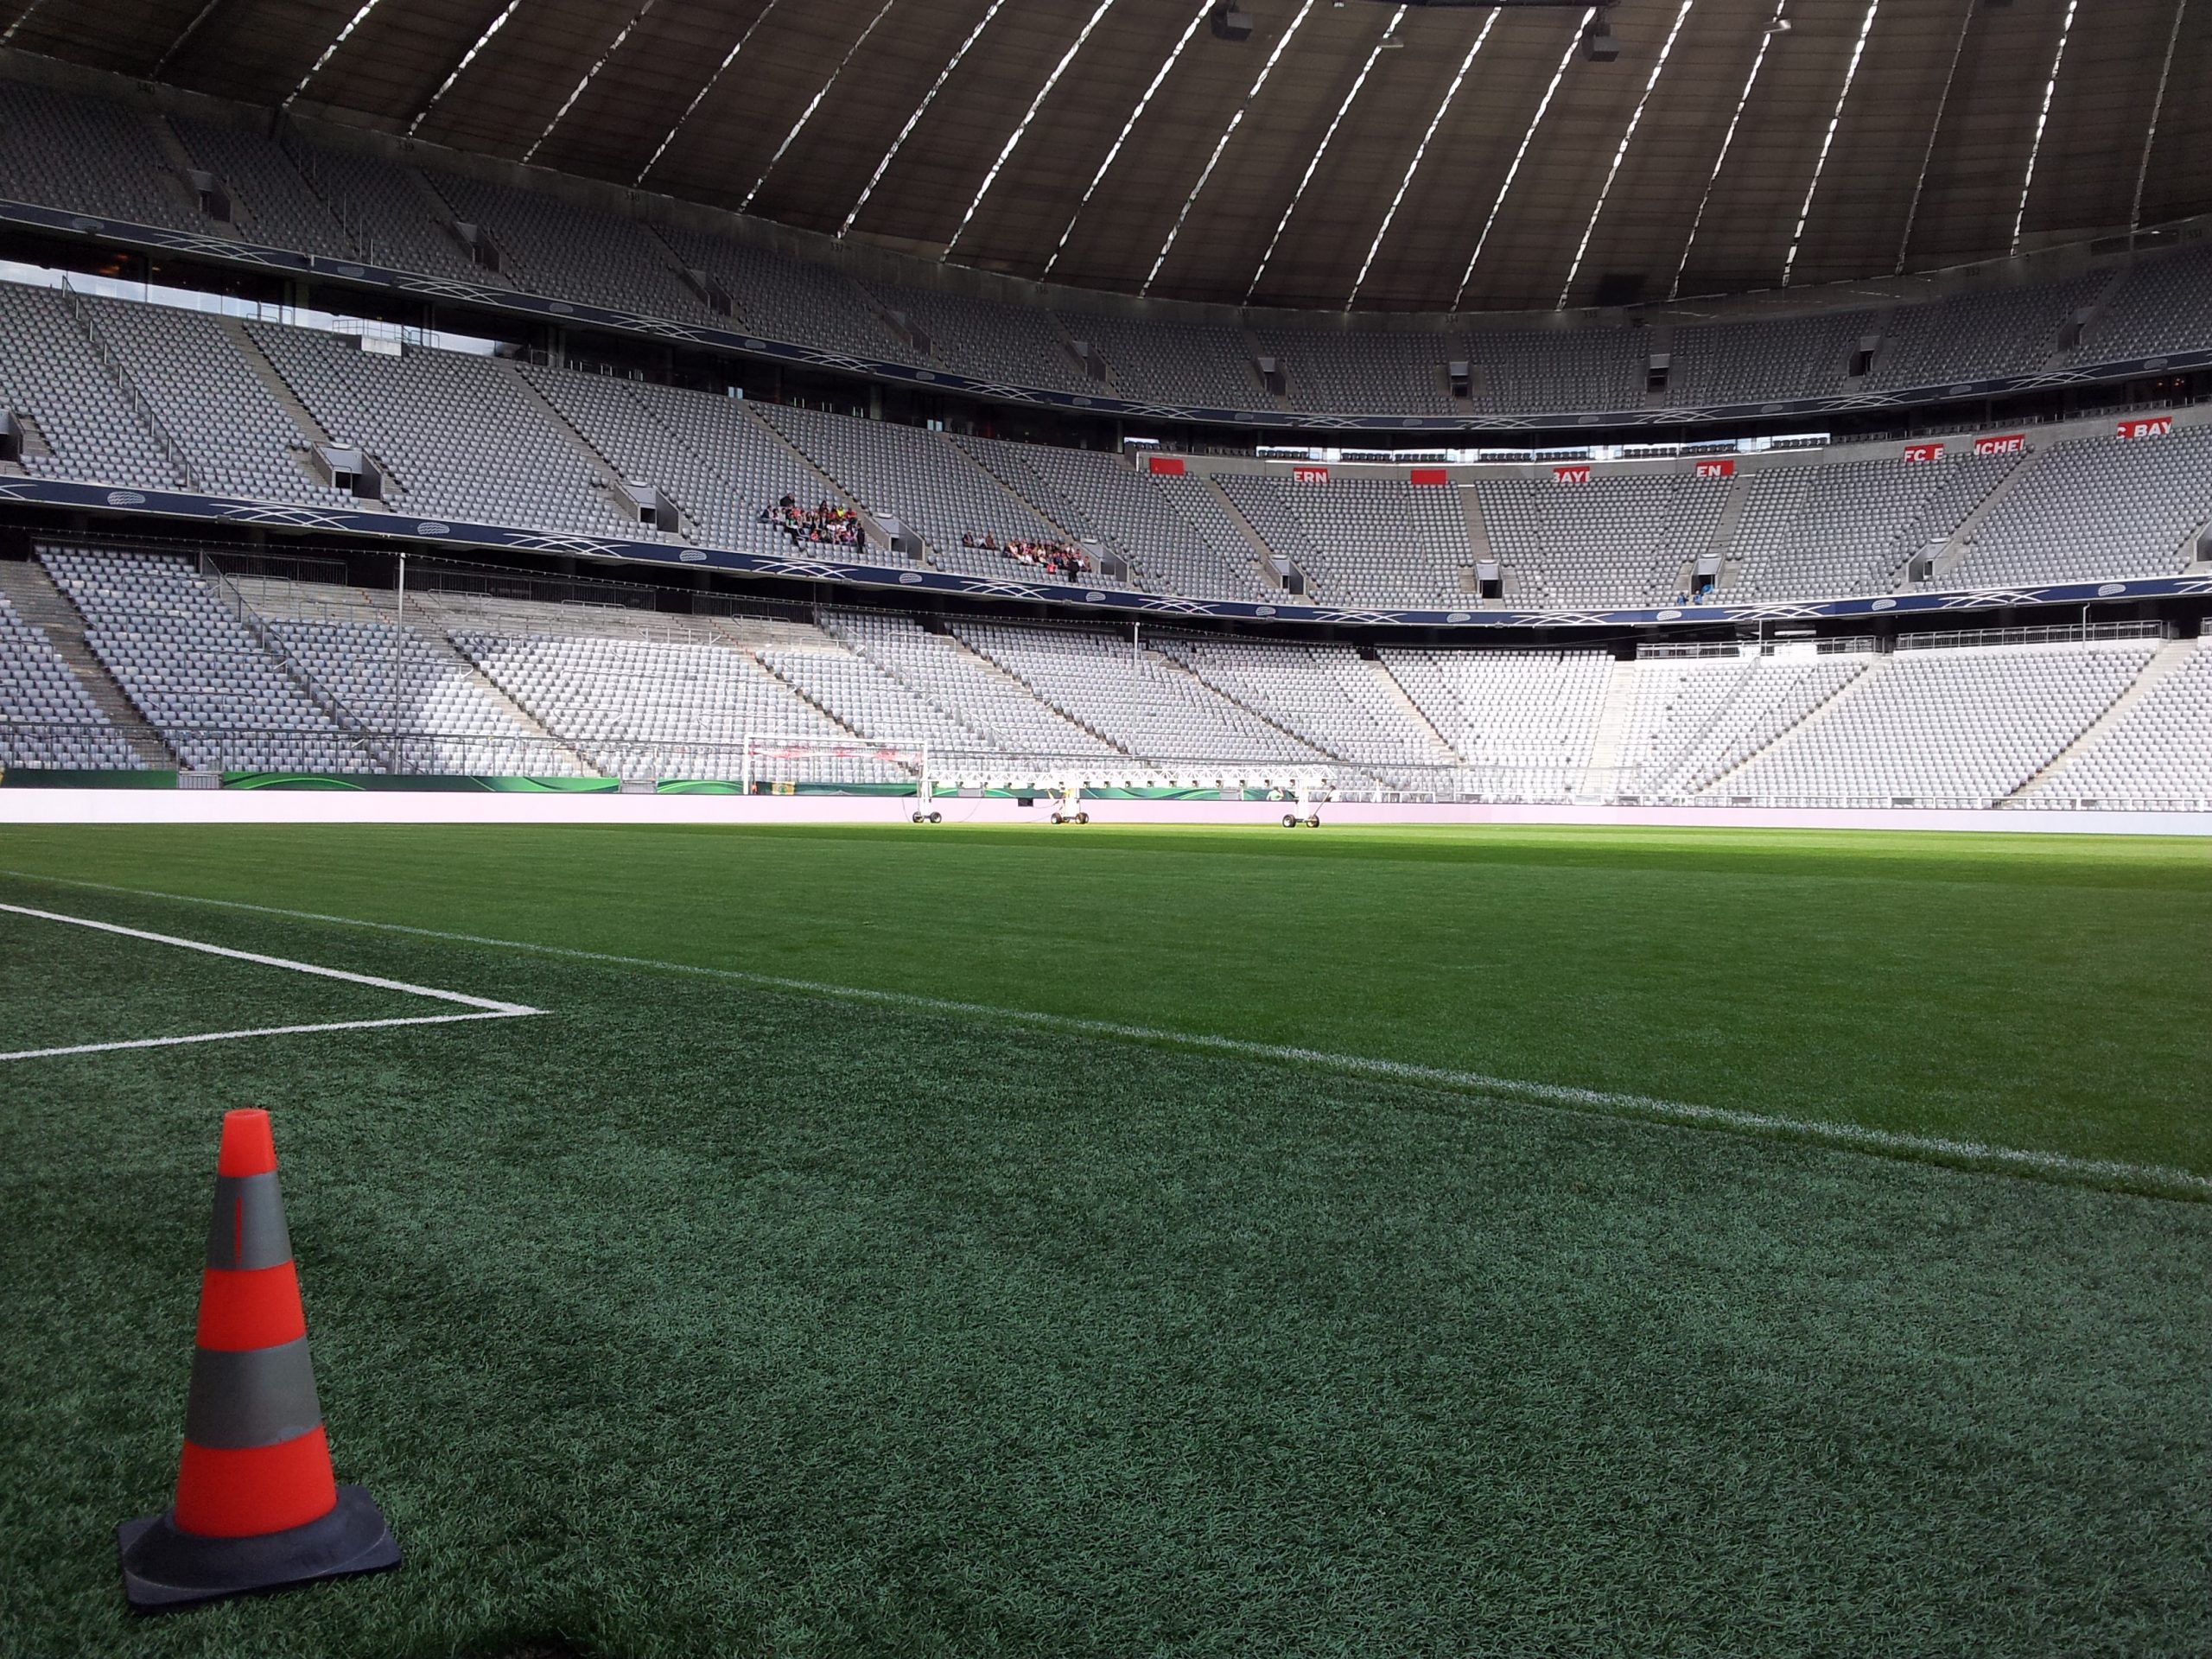 Allianz arena football stadium in Munich